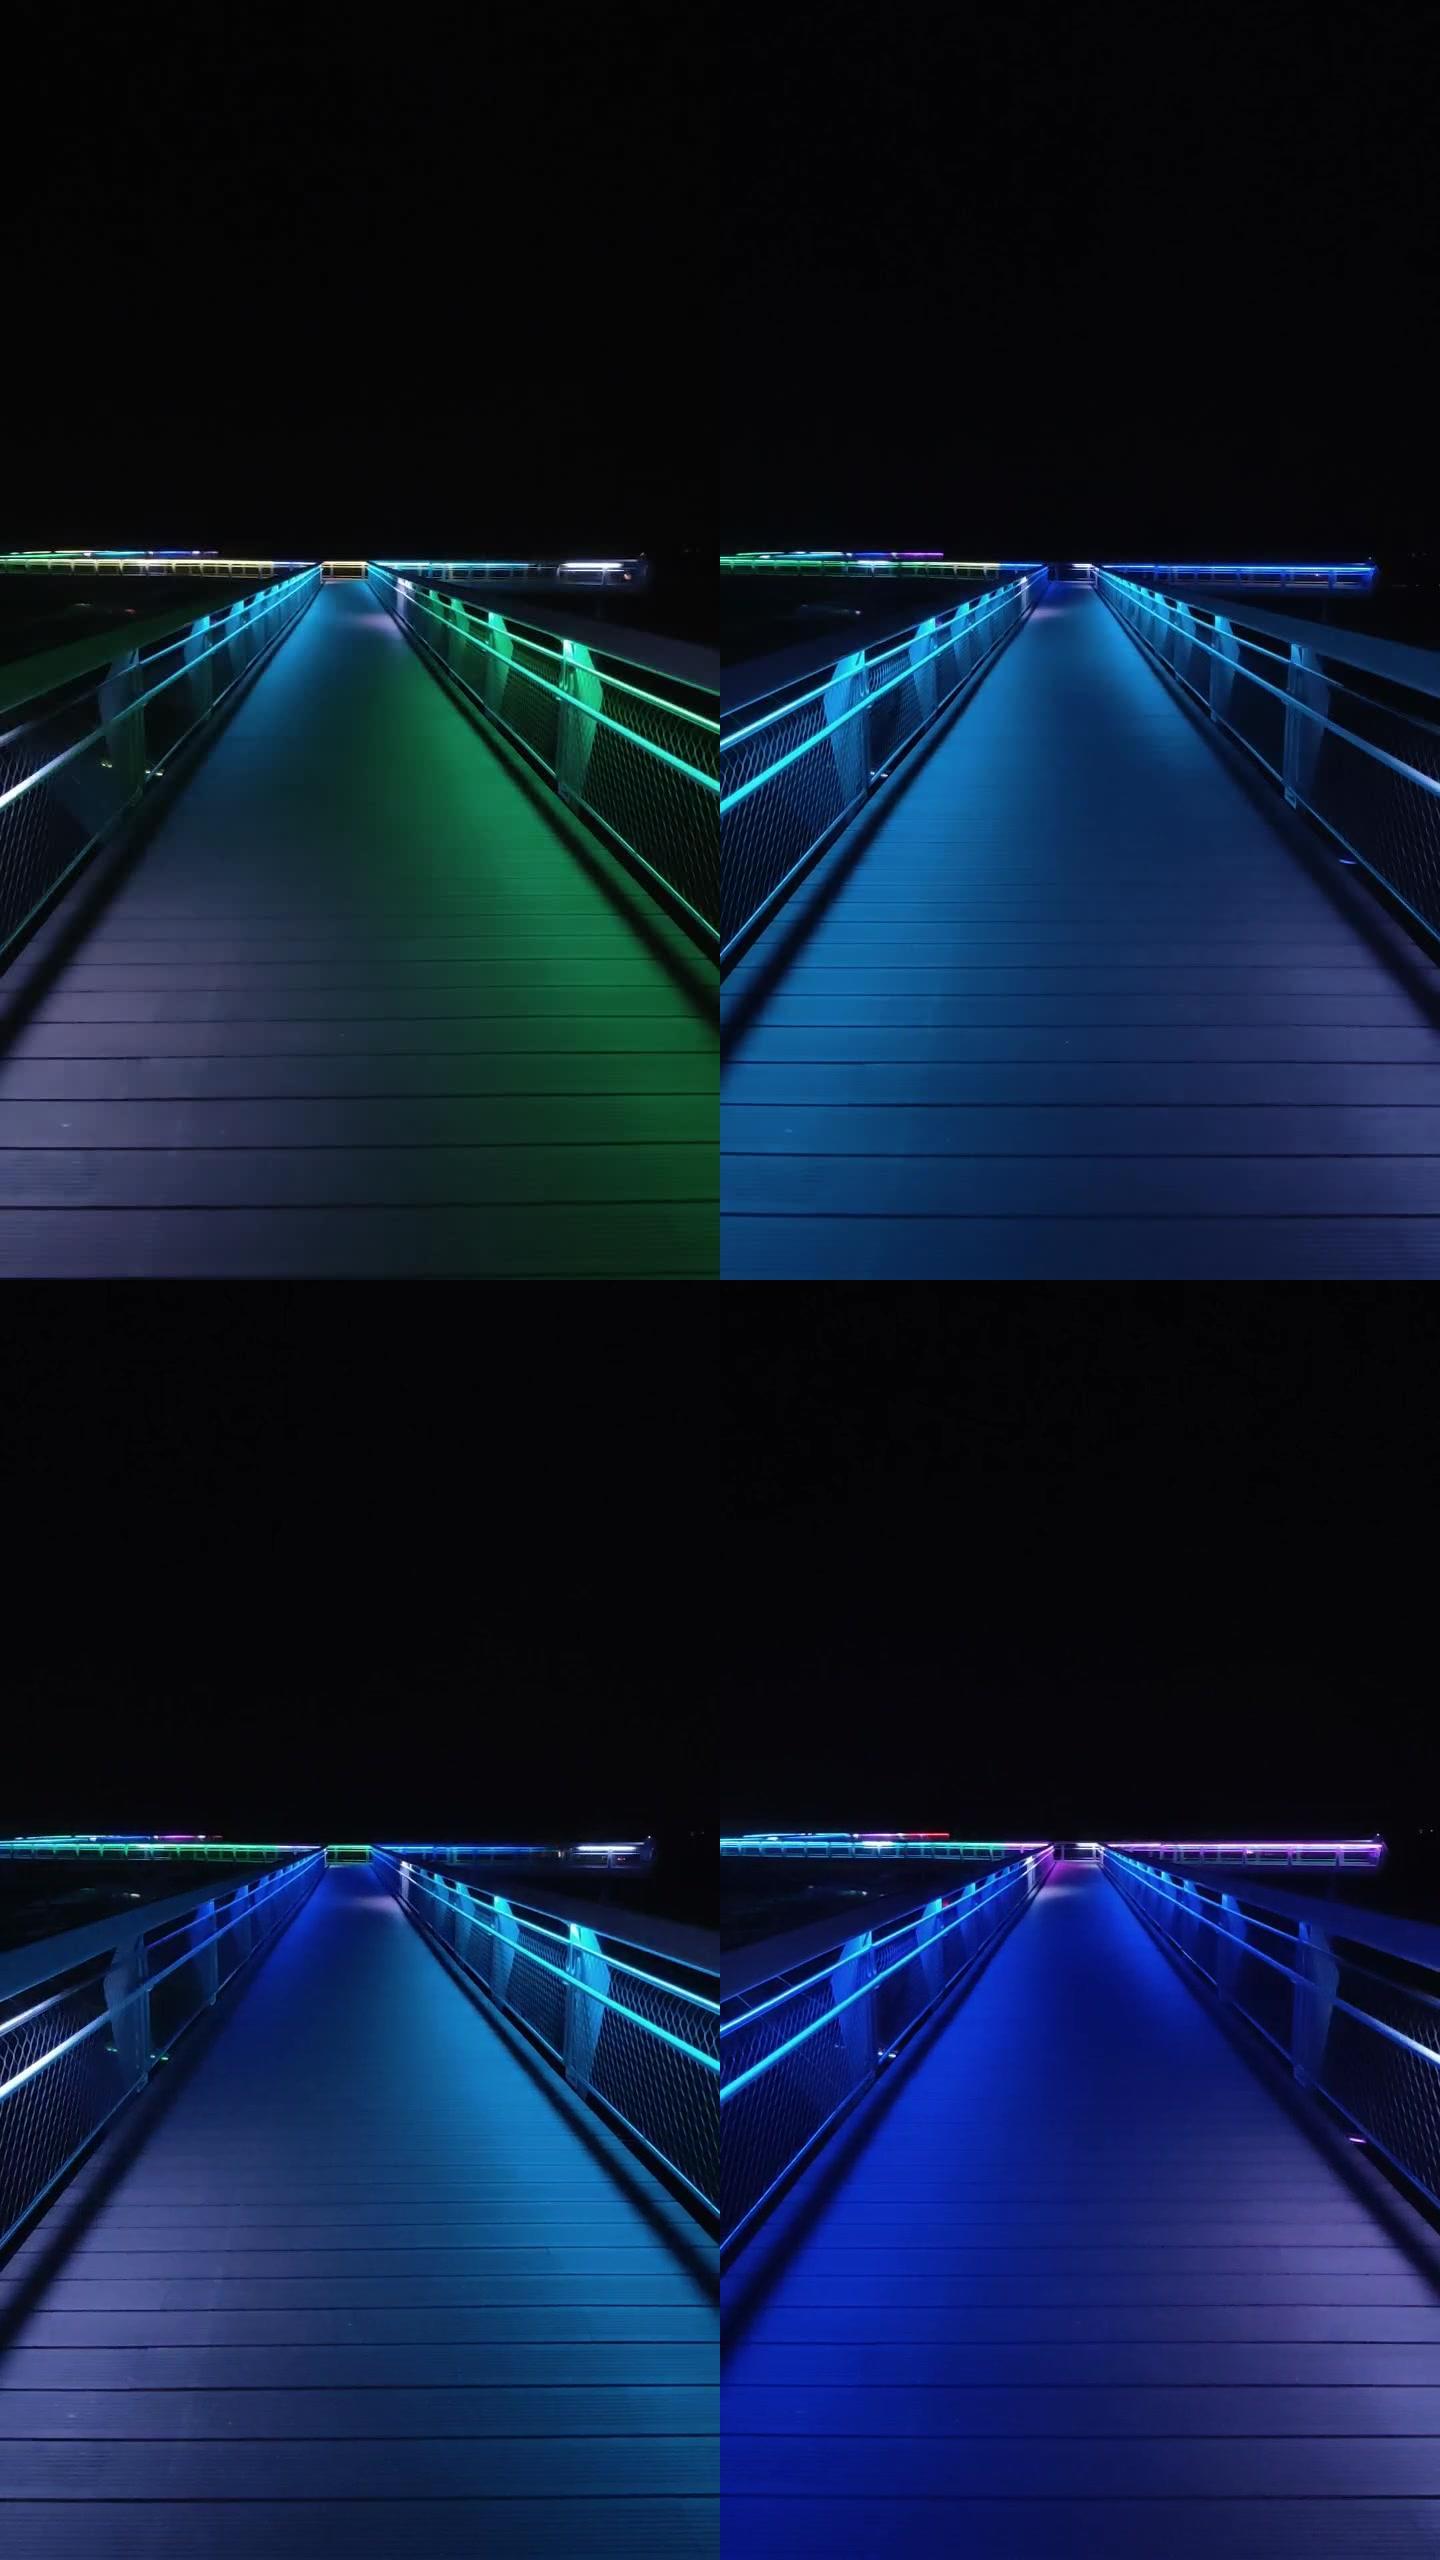 桥夜景